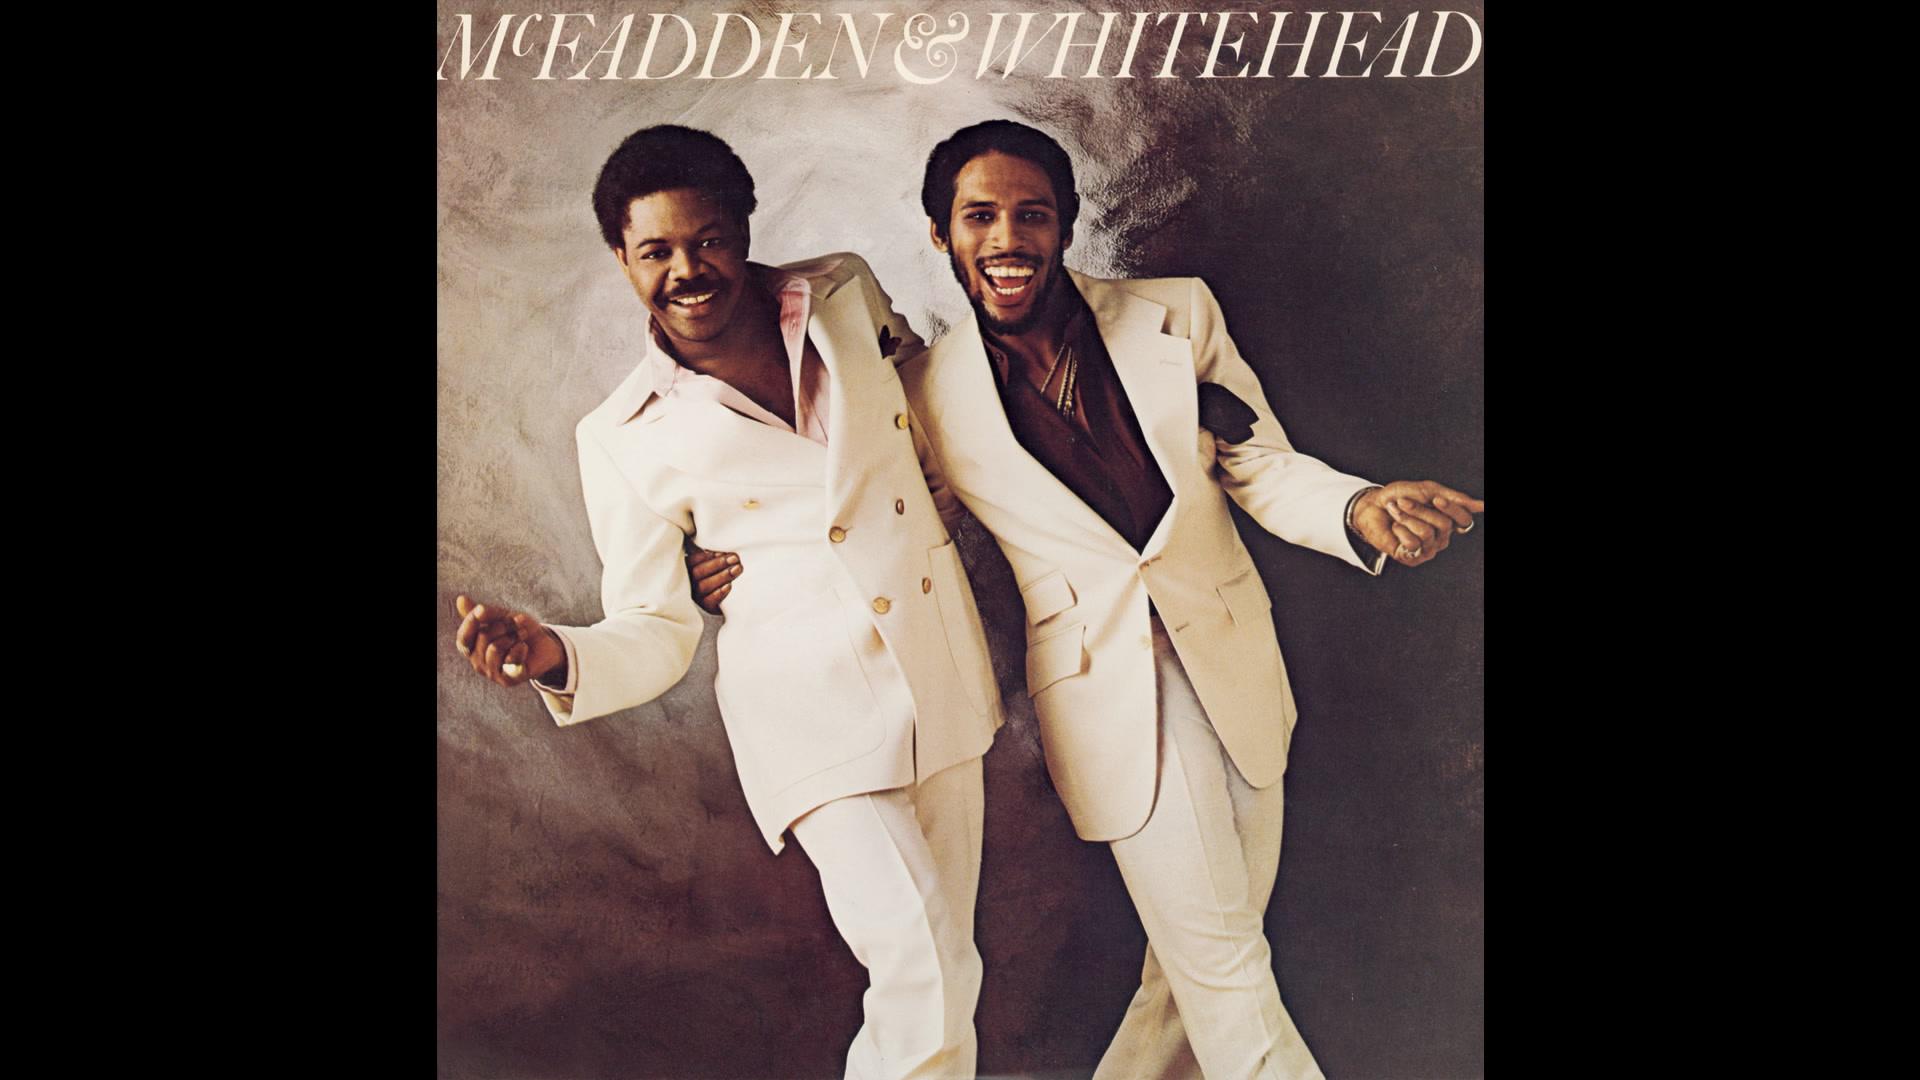 McFadden & Whitehead - Mr. Music (Audio)